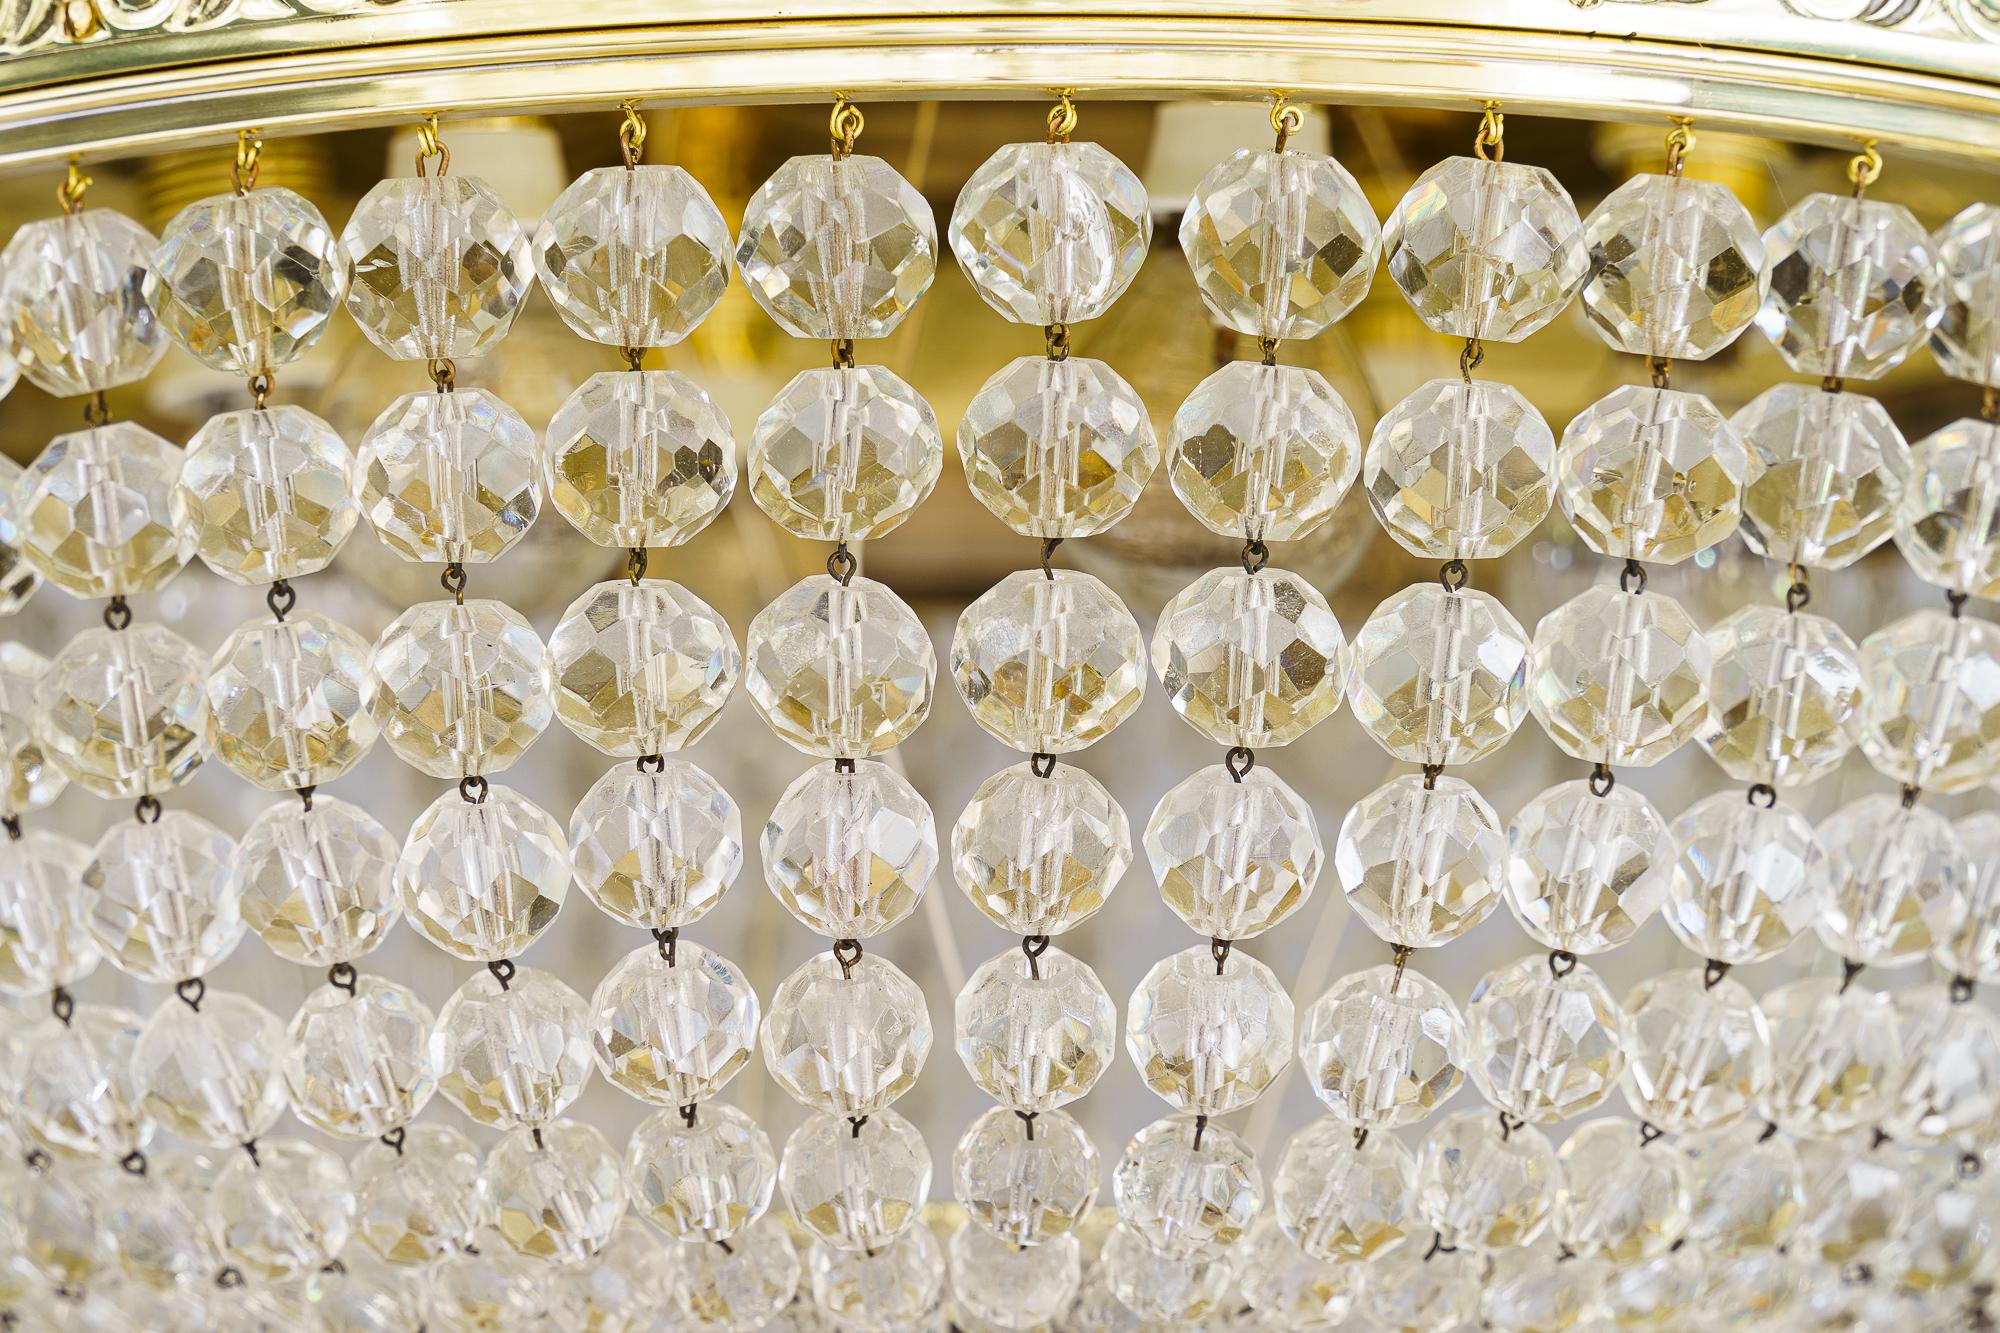 Bigli Art Deco Deckenlampe Wien 1920er Jahre mit geschliffenen Glaskugeln
Messing poliert und emailliert